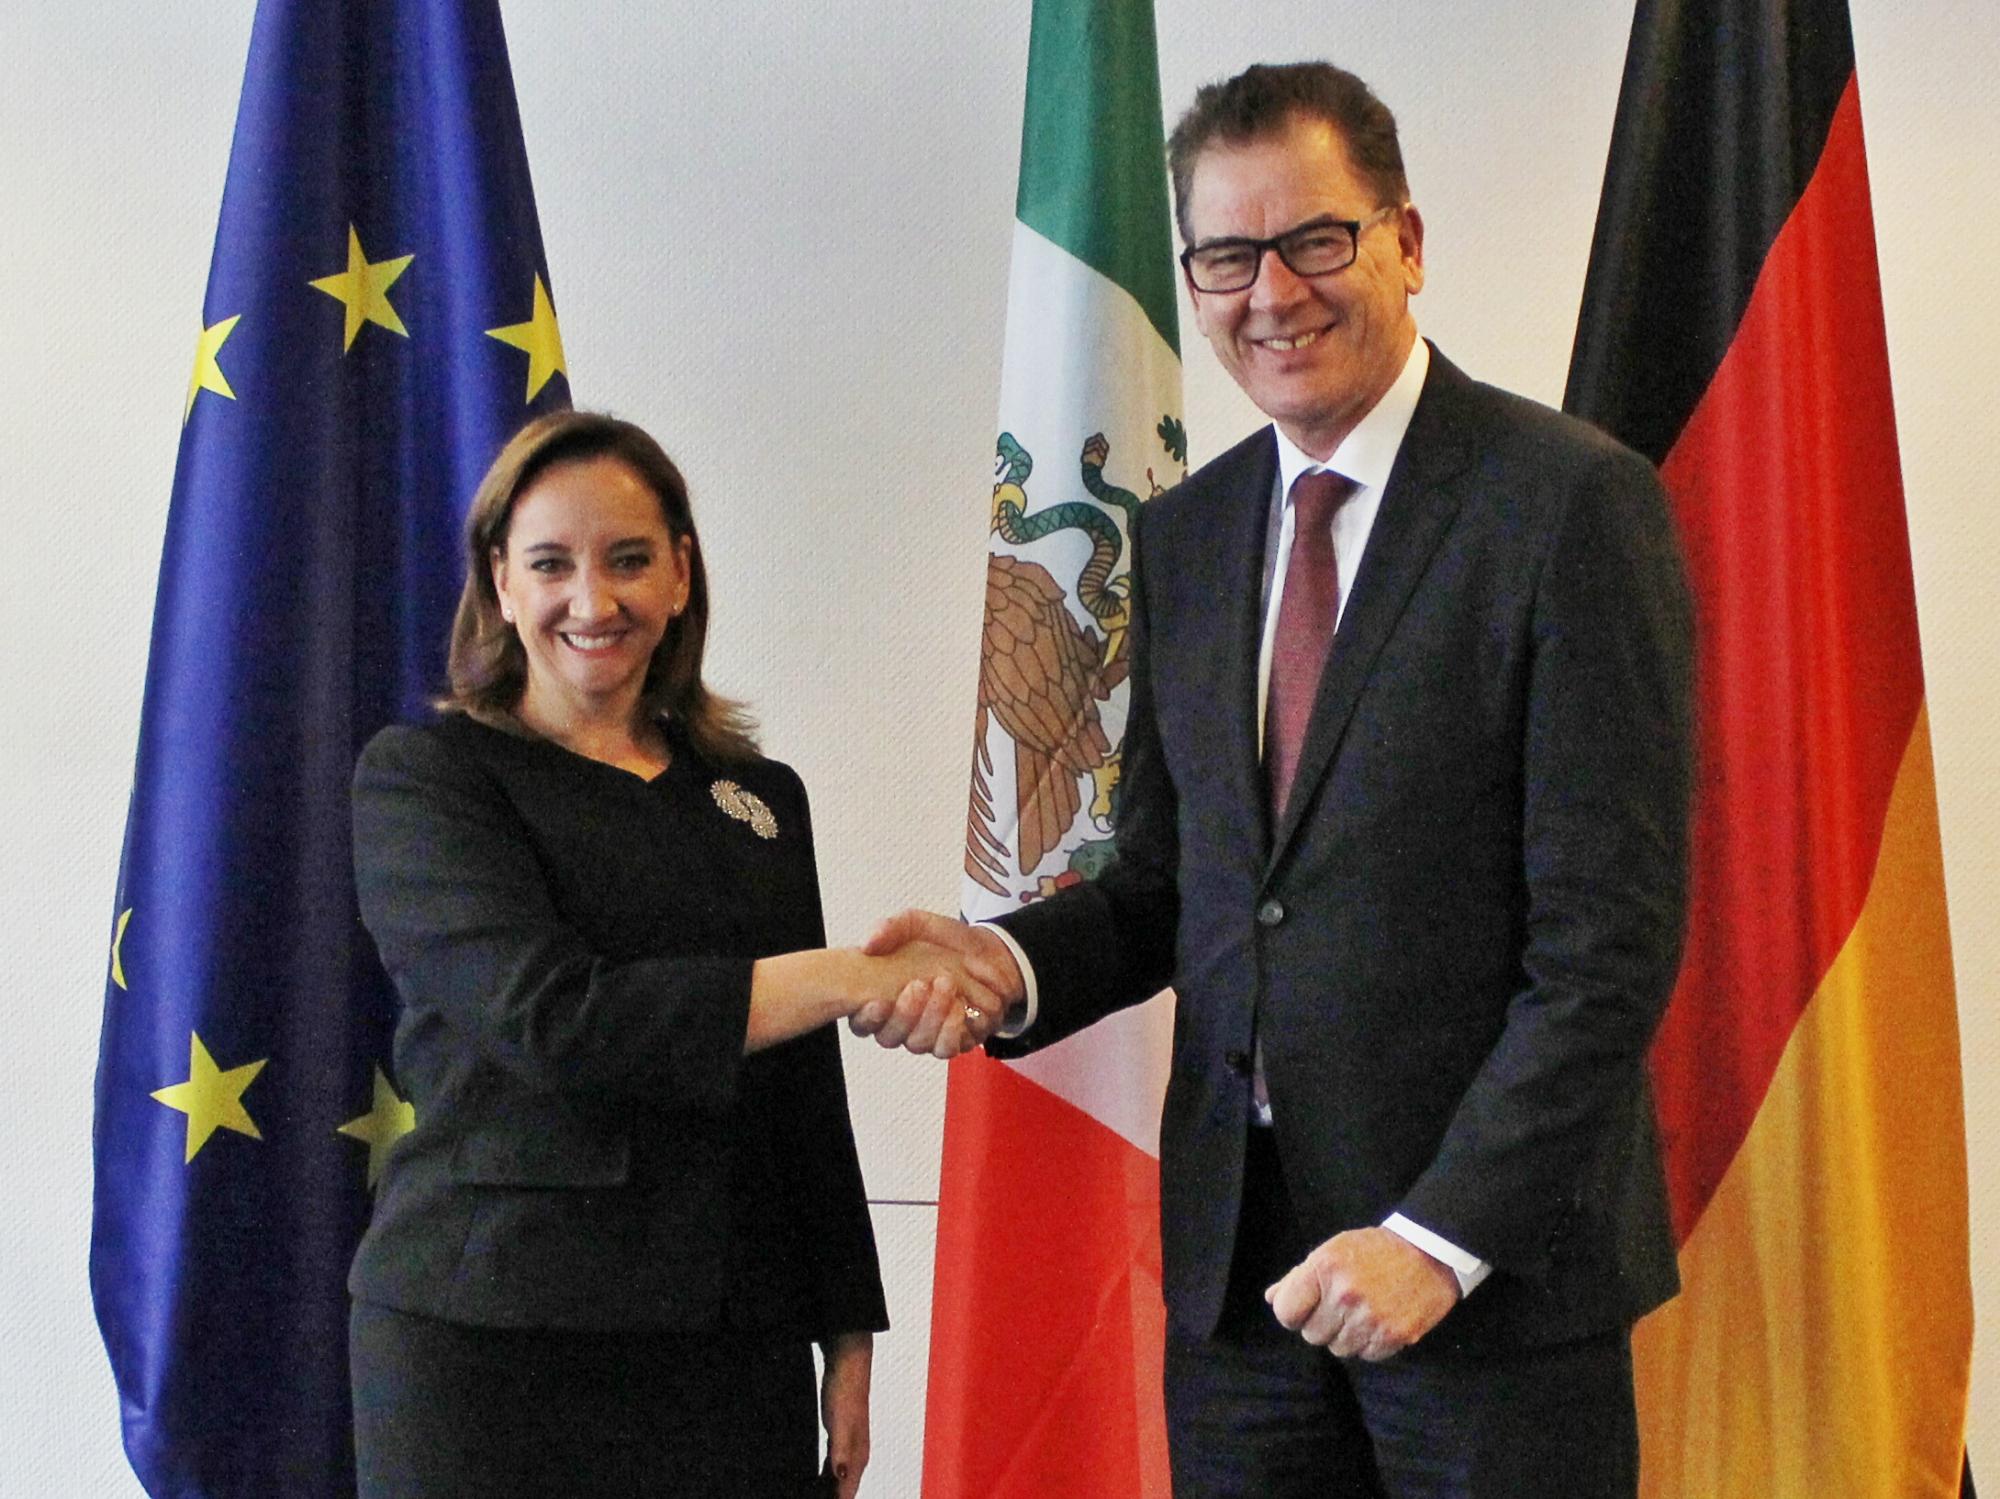 FOTO 2 Canciller Claudia Ruiz Massieu con el Ministro Federal de Cooperaci n Econ mica y Desarrollo  Gerd M llerjpg